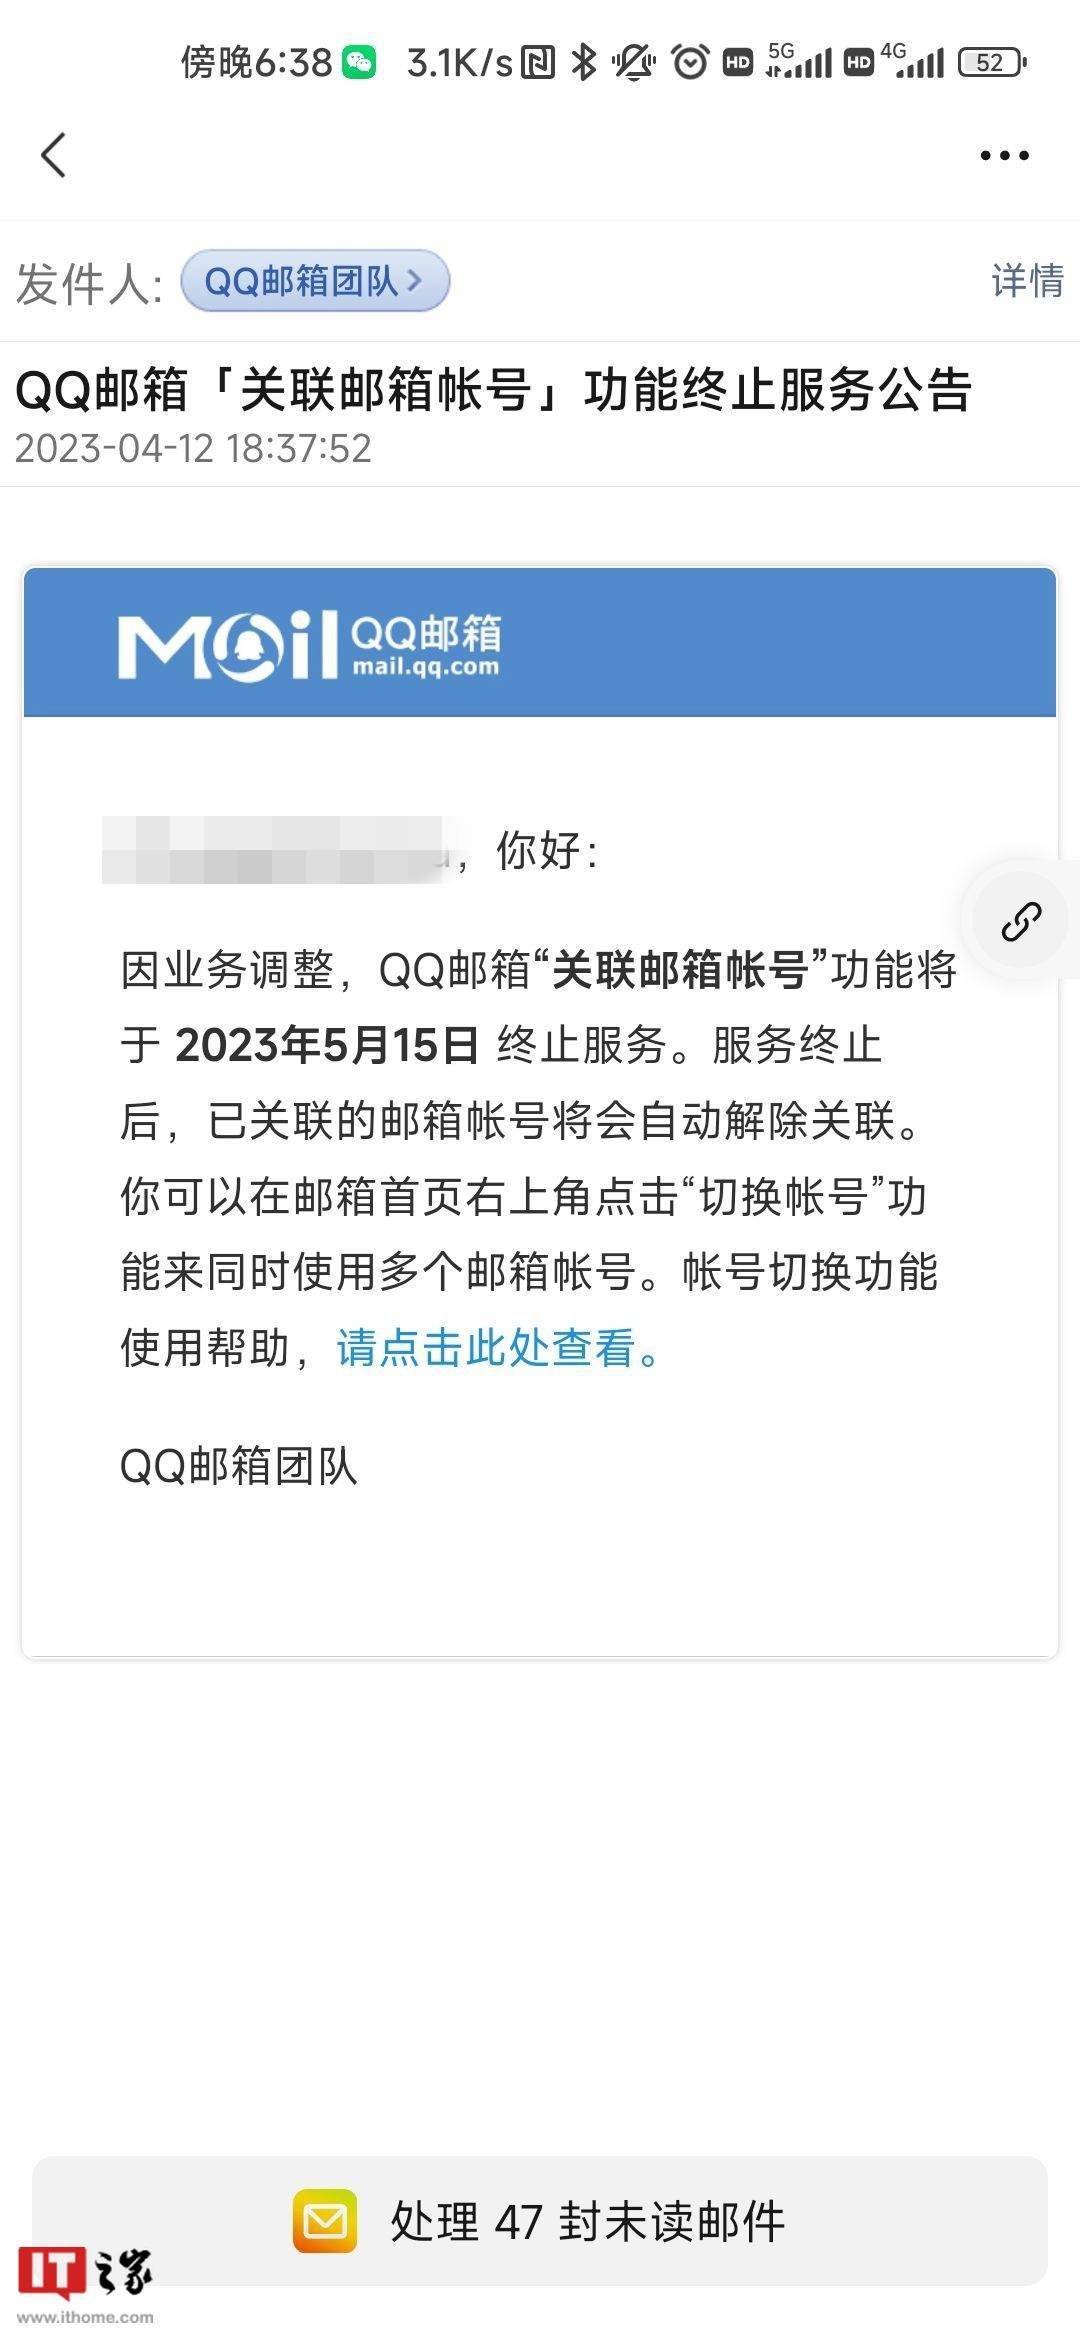 qq登录网页手机版:腾讯 QQ 邮箱宣布“关联邮箱帐号”功能 2023 年 5 月 15 日下线-第1张图片-太平洋在线下载